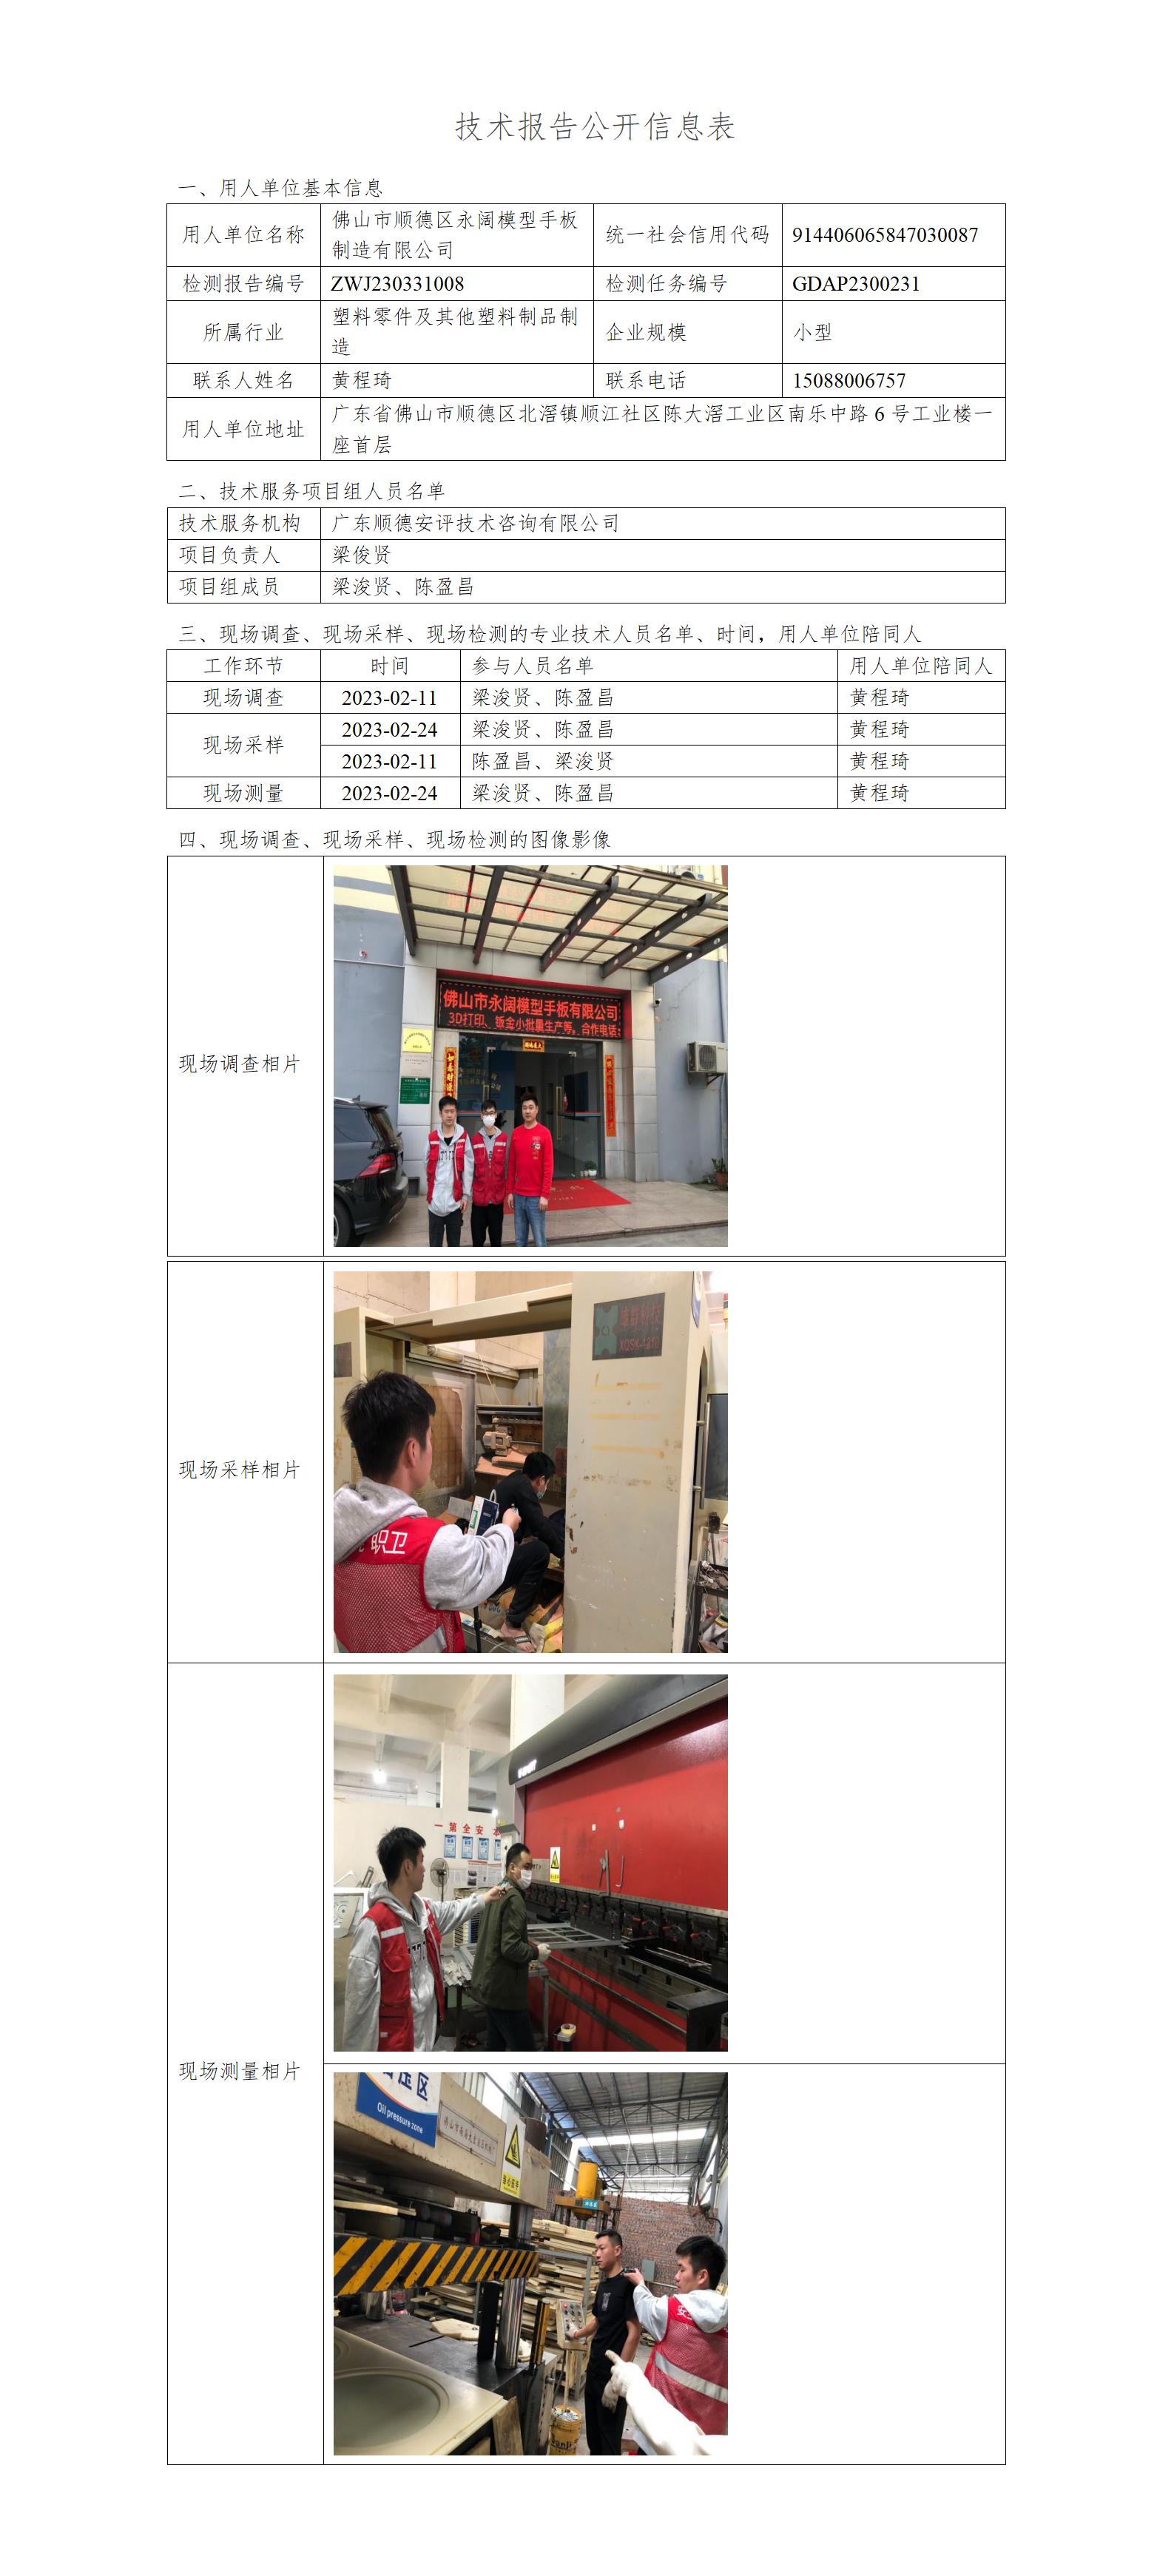 佛山市顺德区永阔模型手板制造有限公司-2023-技术报告公开信息表_01.jpg